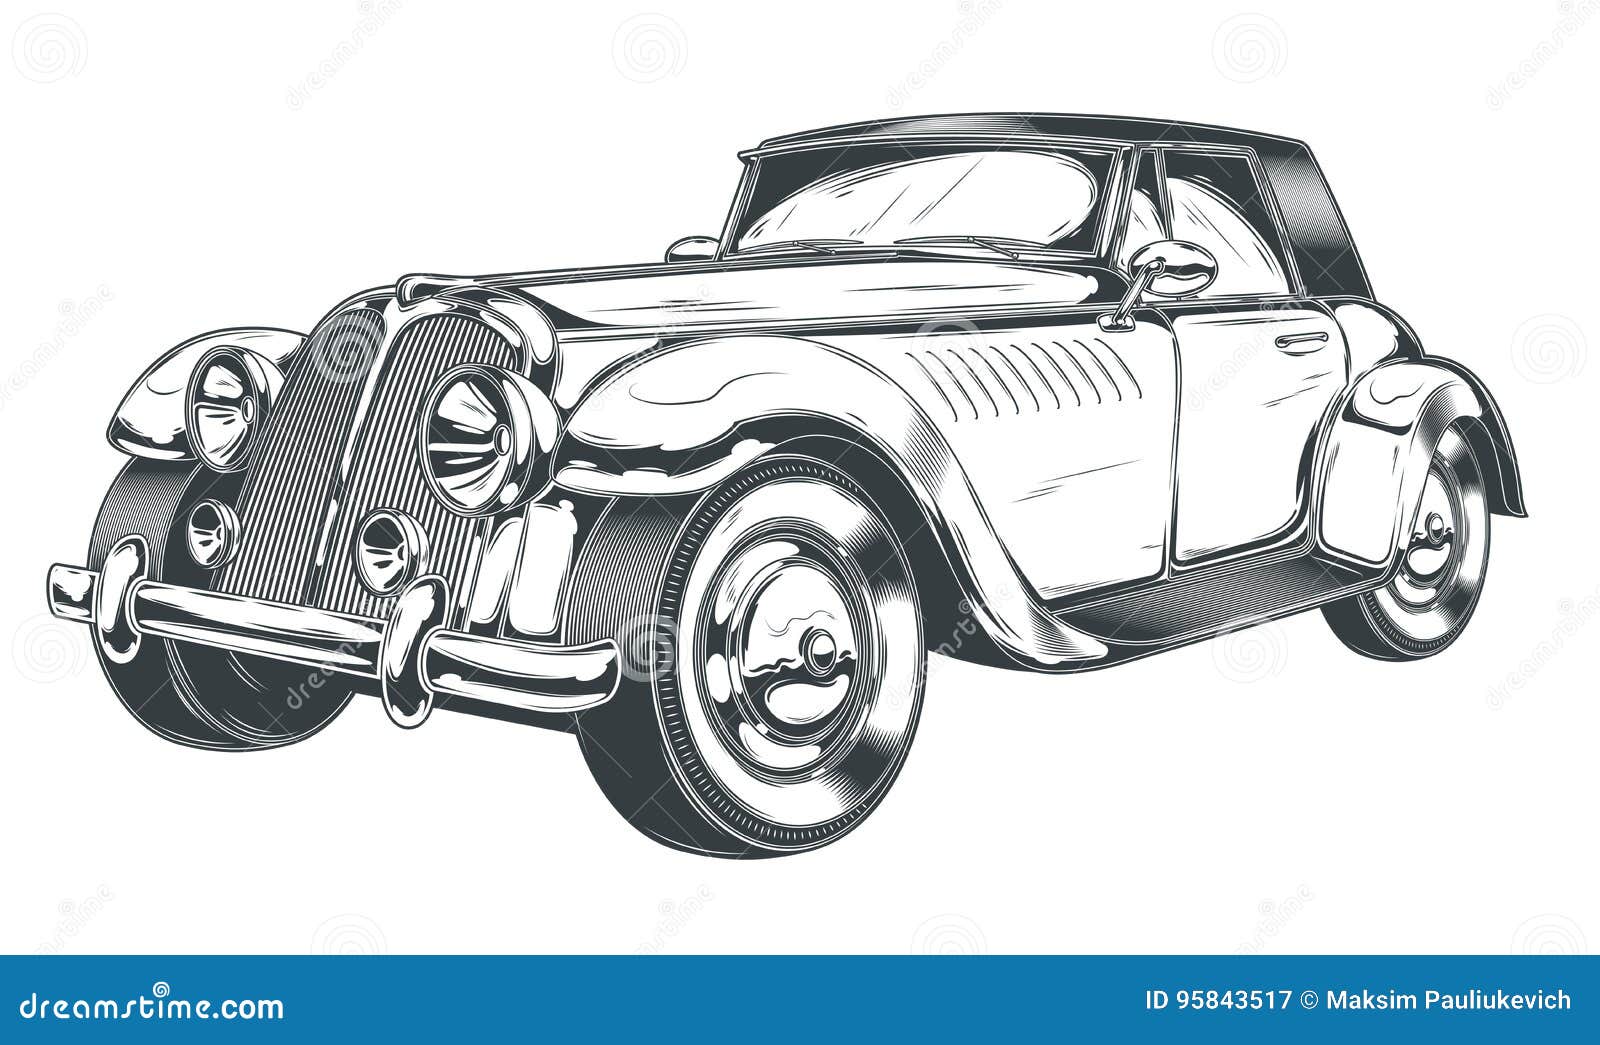 Download Vintage Car Drawing Sketch RoyaltyFree Stock Illustration Image   Pixabay